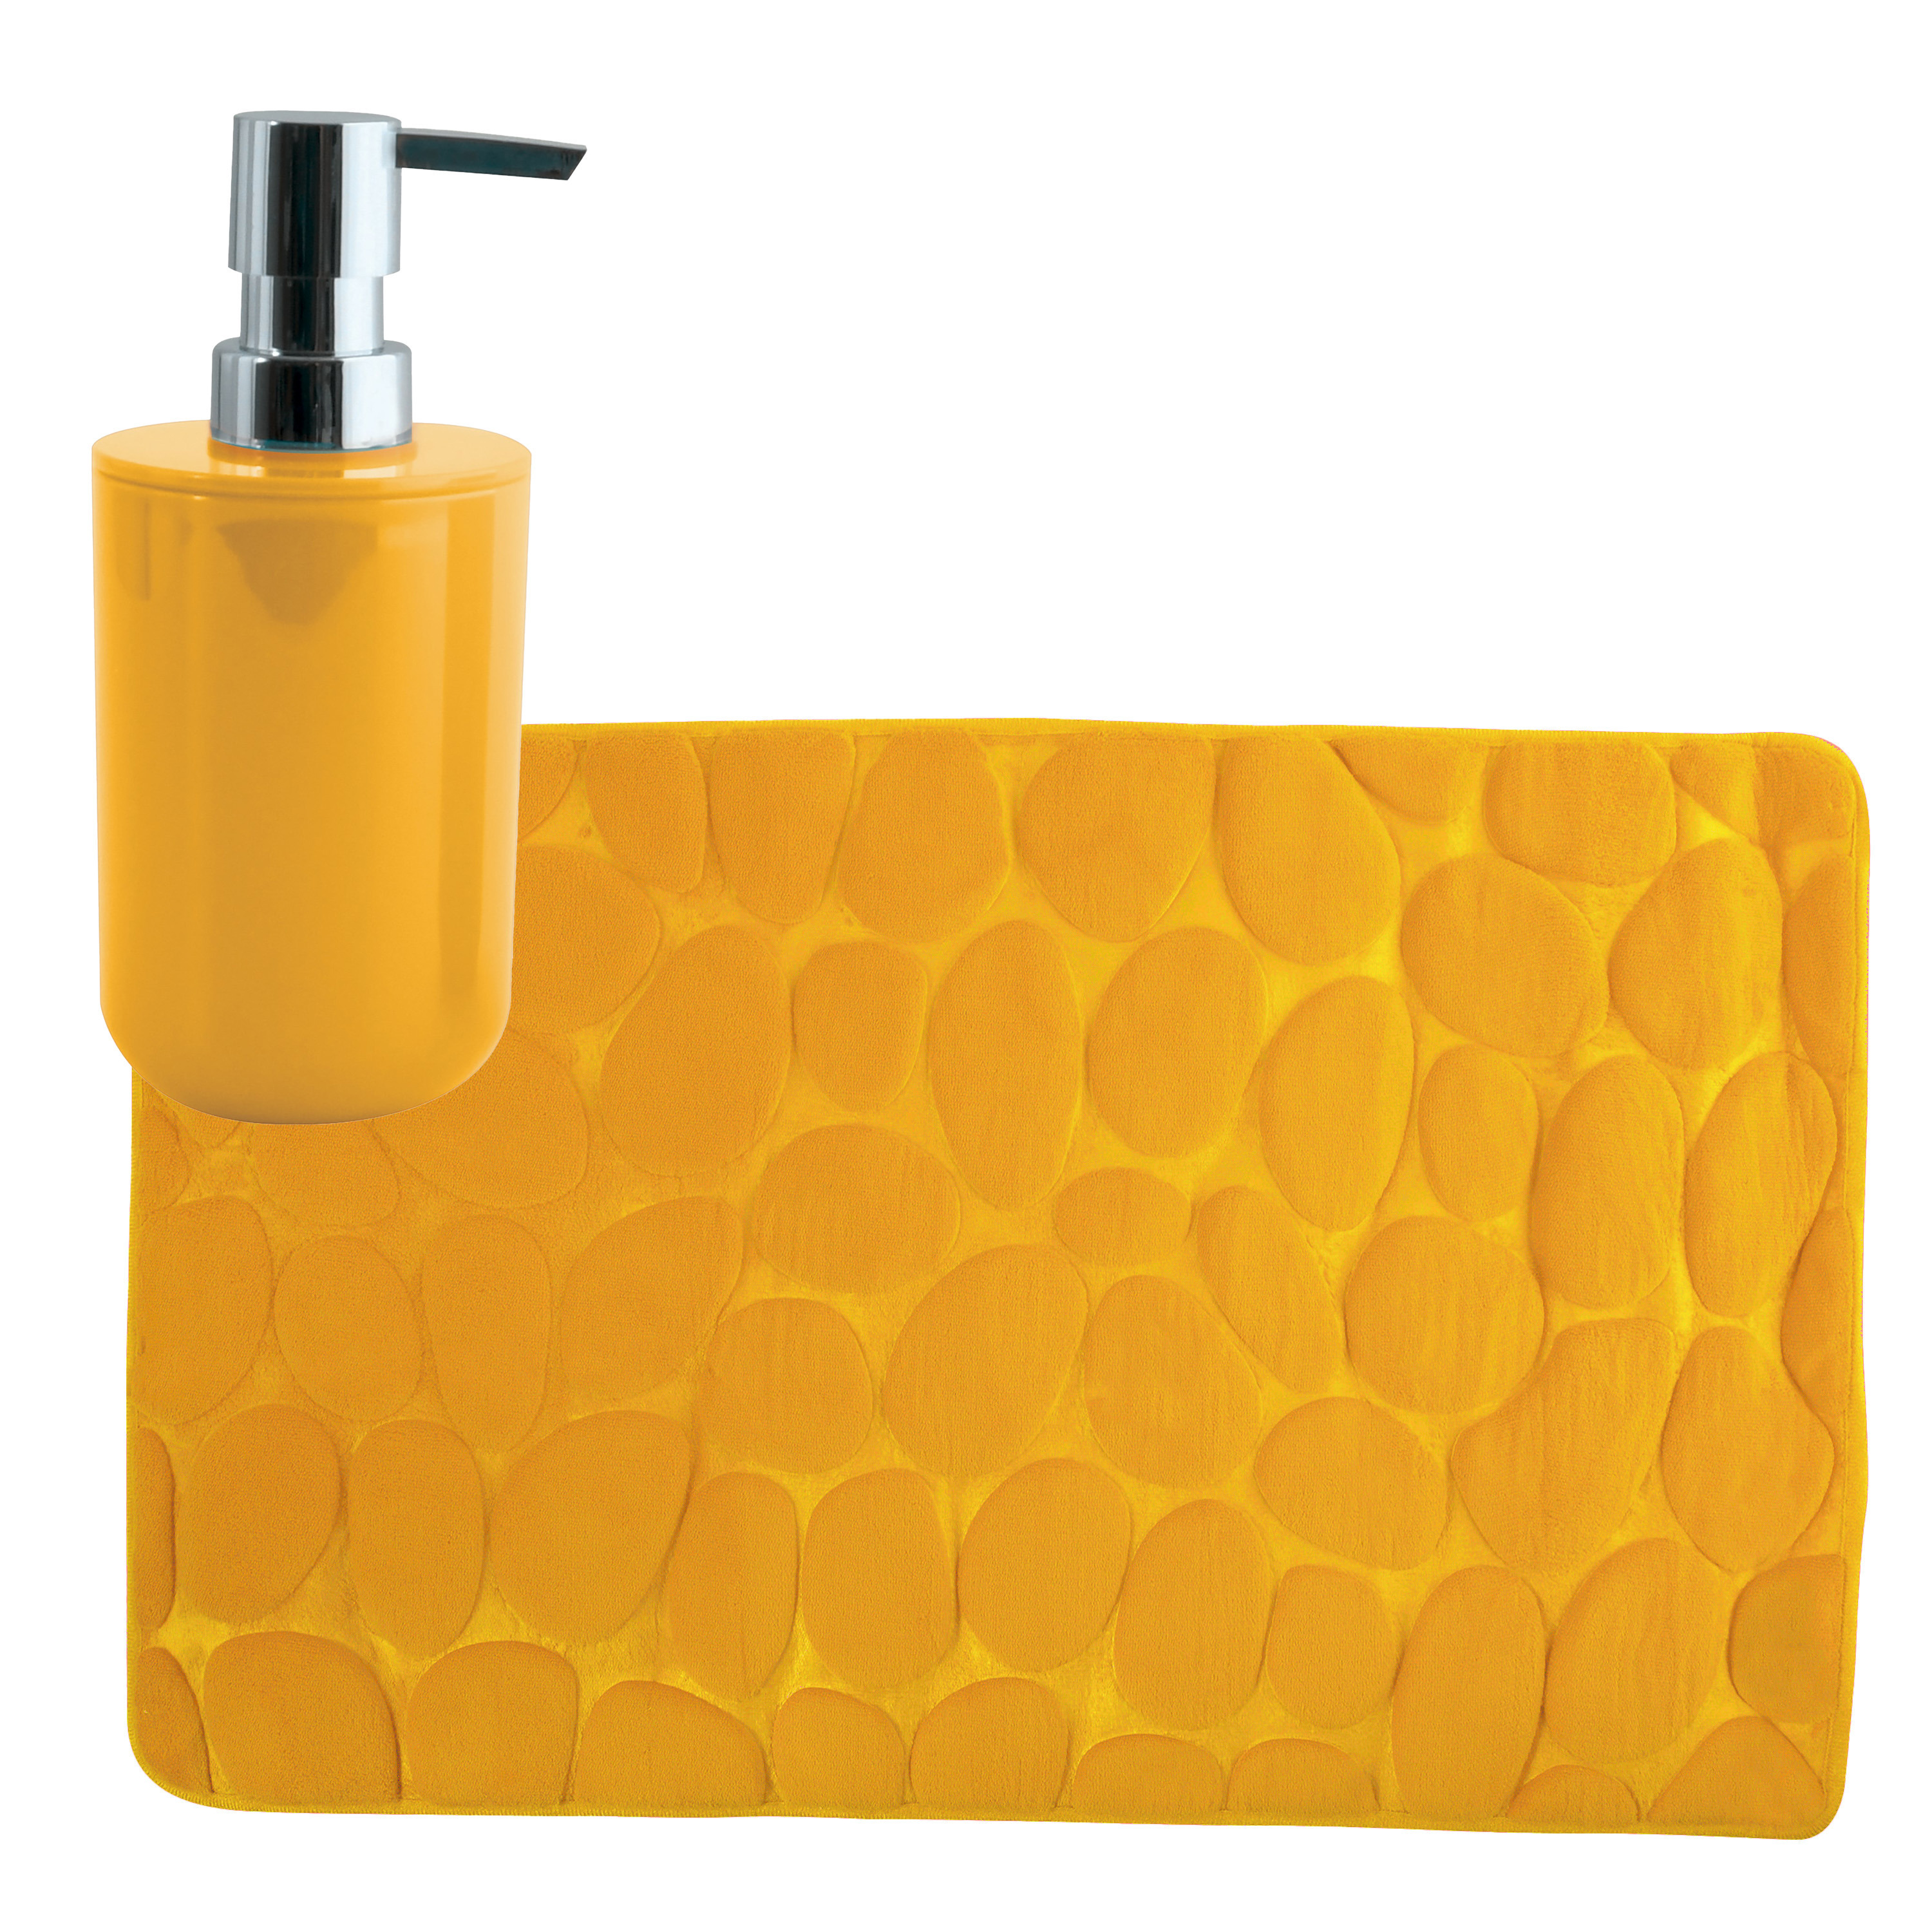 MSV badkamer droogloop mat-tapijt Kiezel 50 x 80 cm zelfde kleur zeeppompje saffraan geel